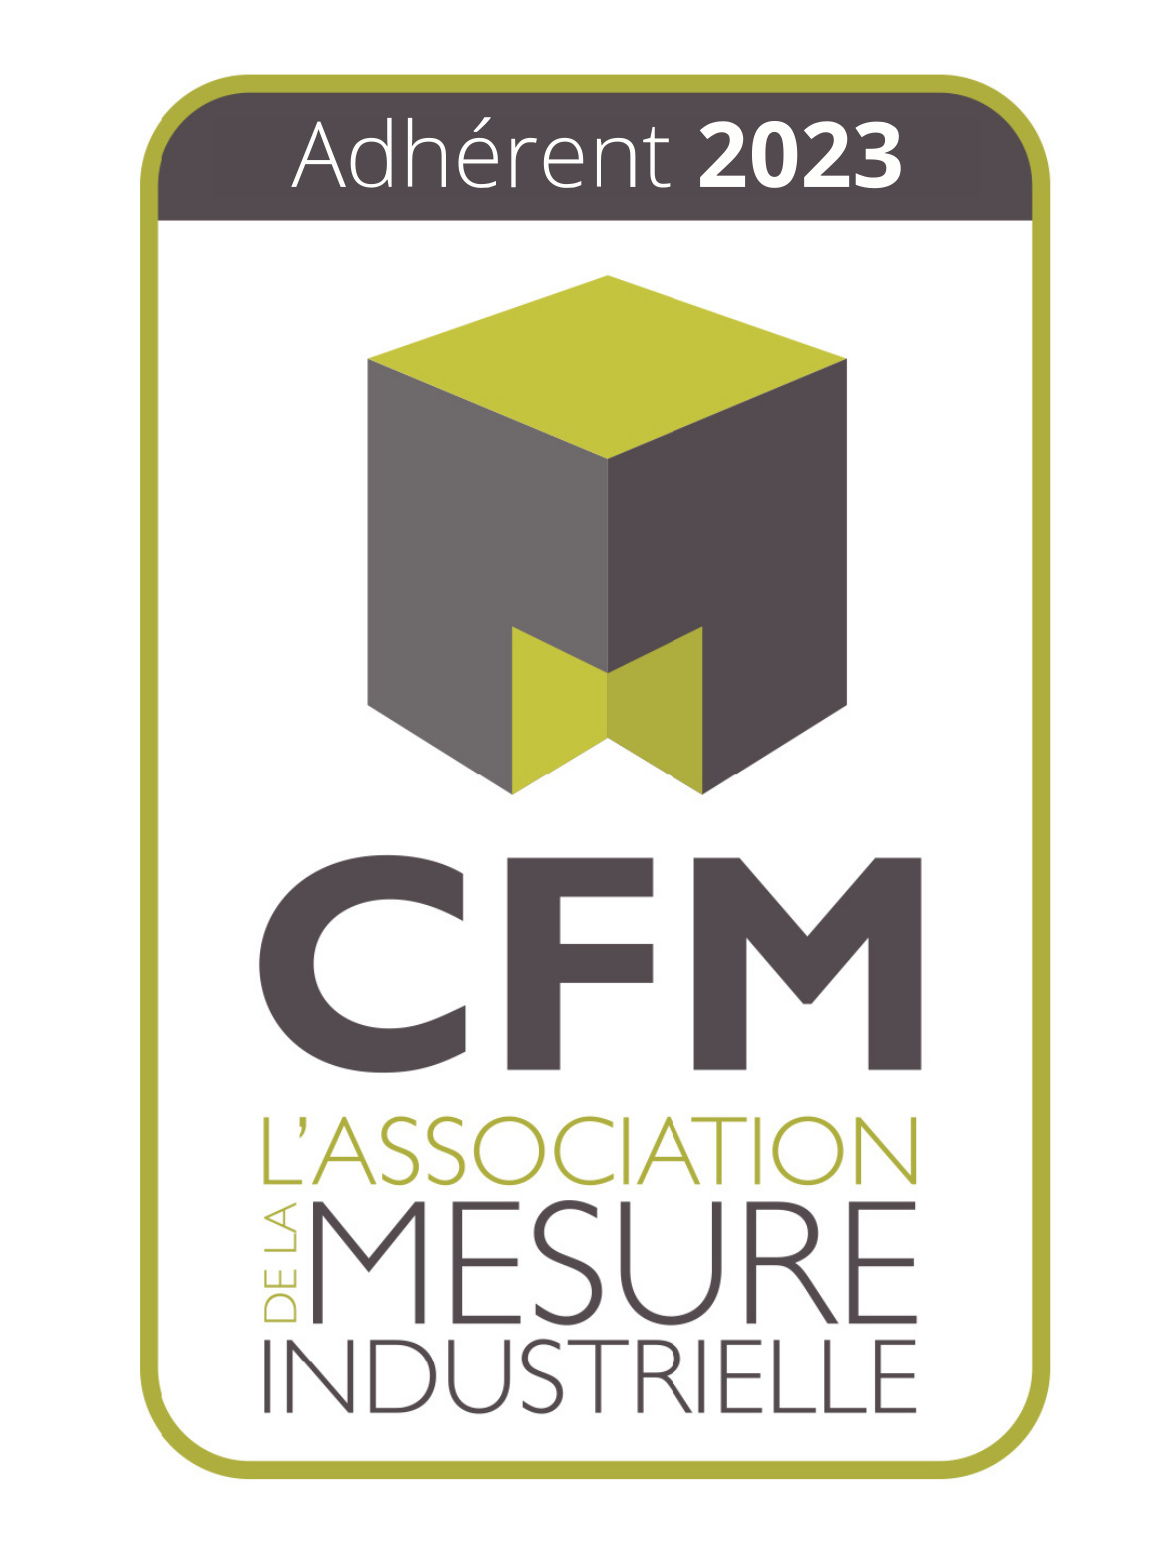 Félix Informatique est membre du CFM ( Collège Français de Métrologie) 2023